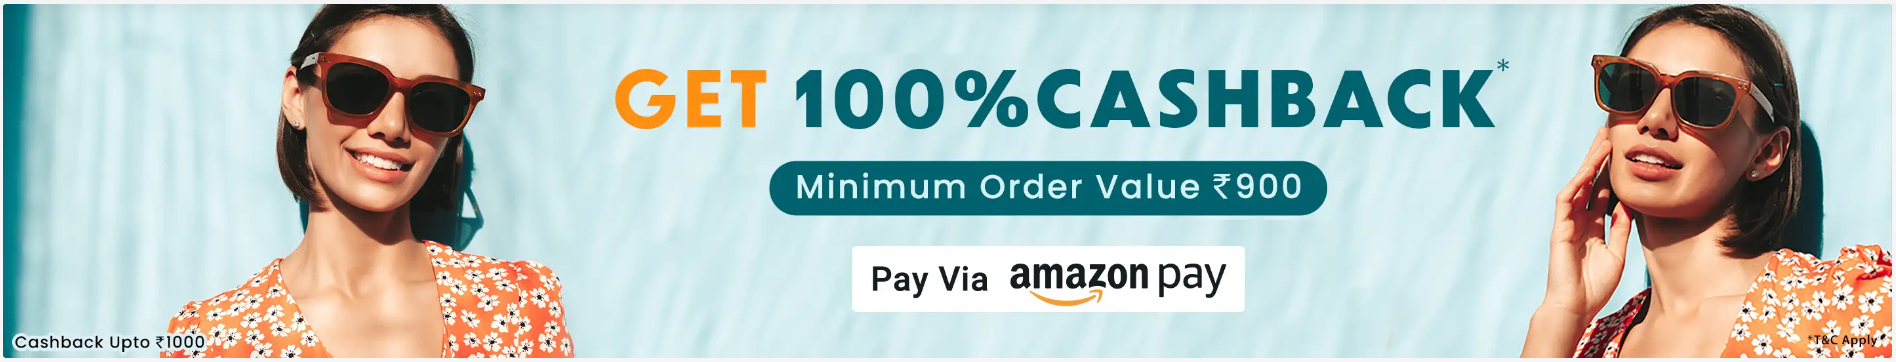 EyeMyEye 100% Cashback Offer Amazon